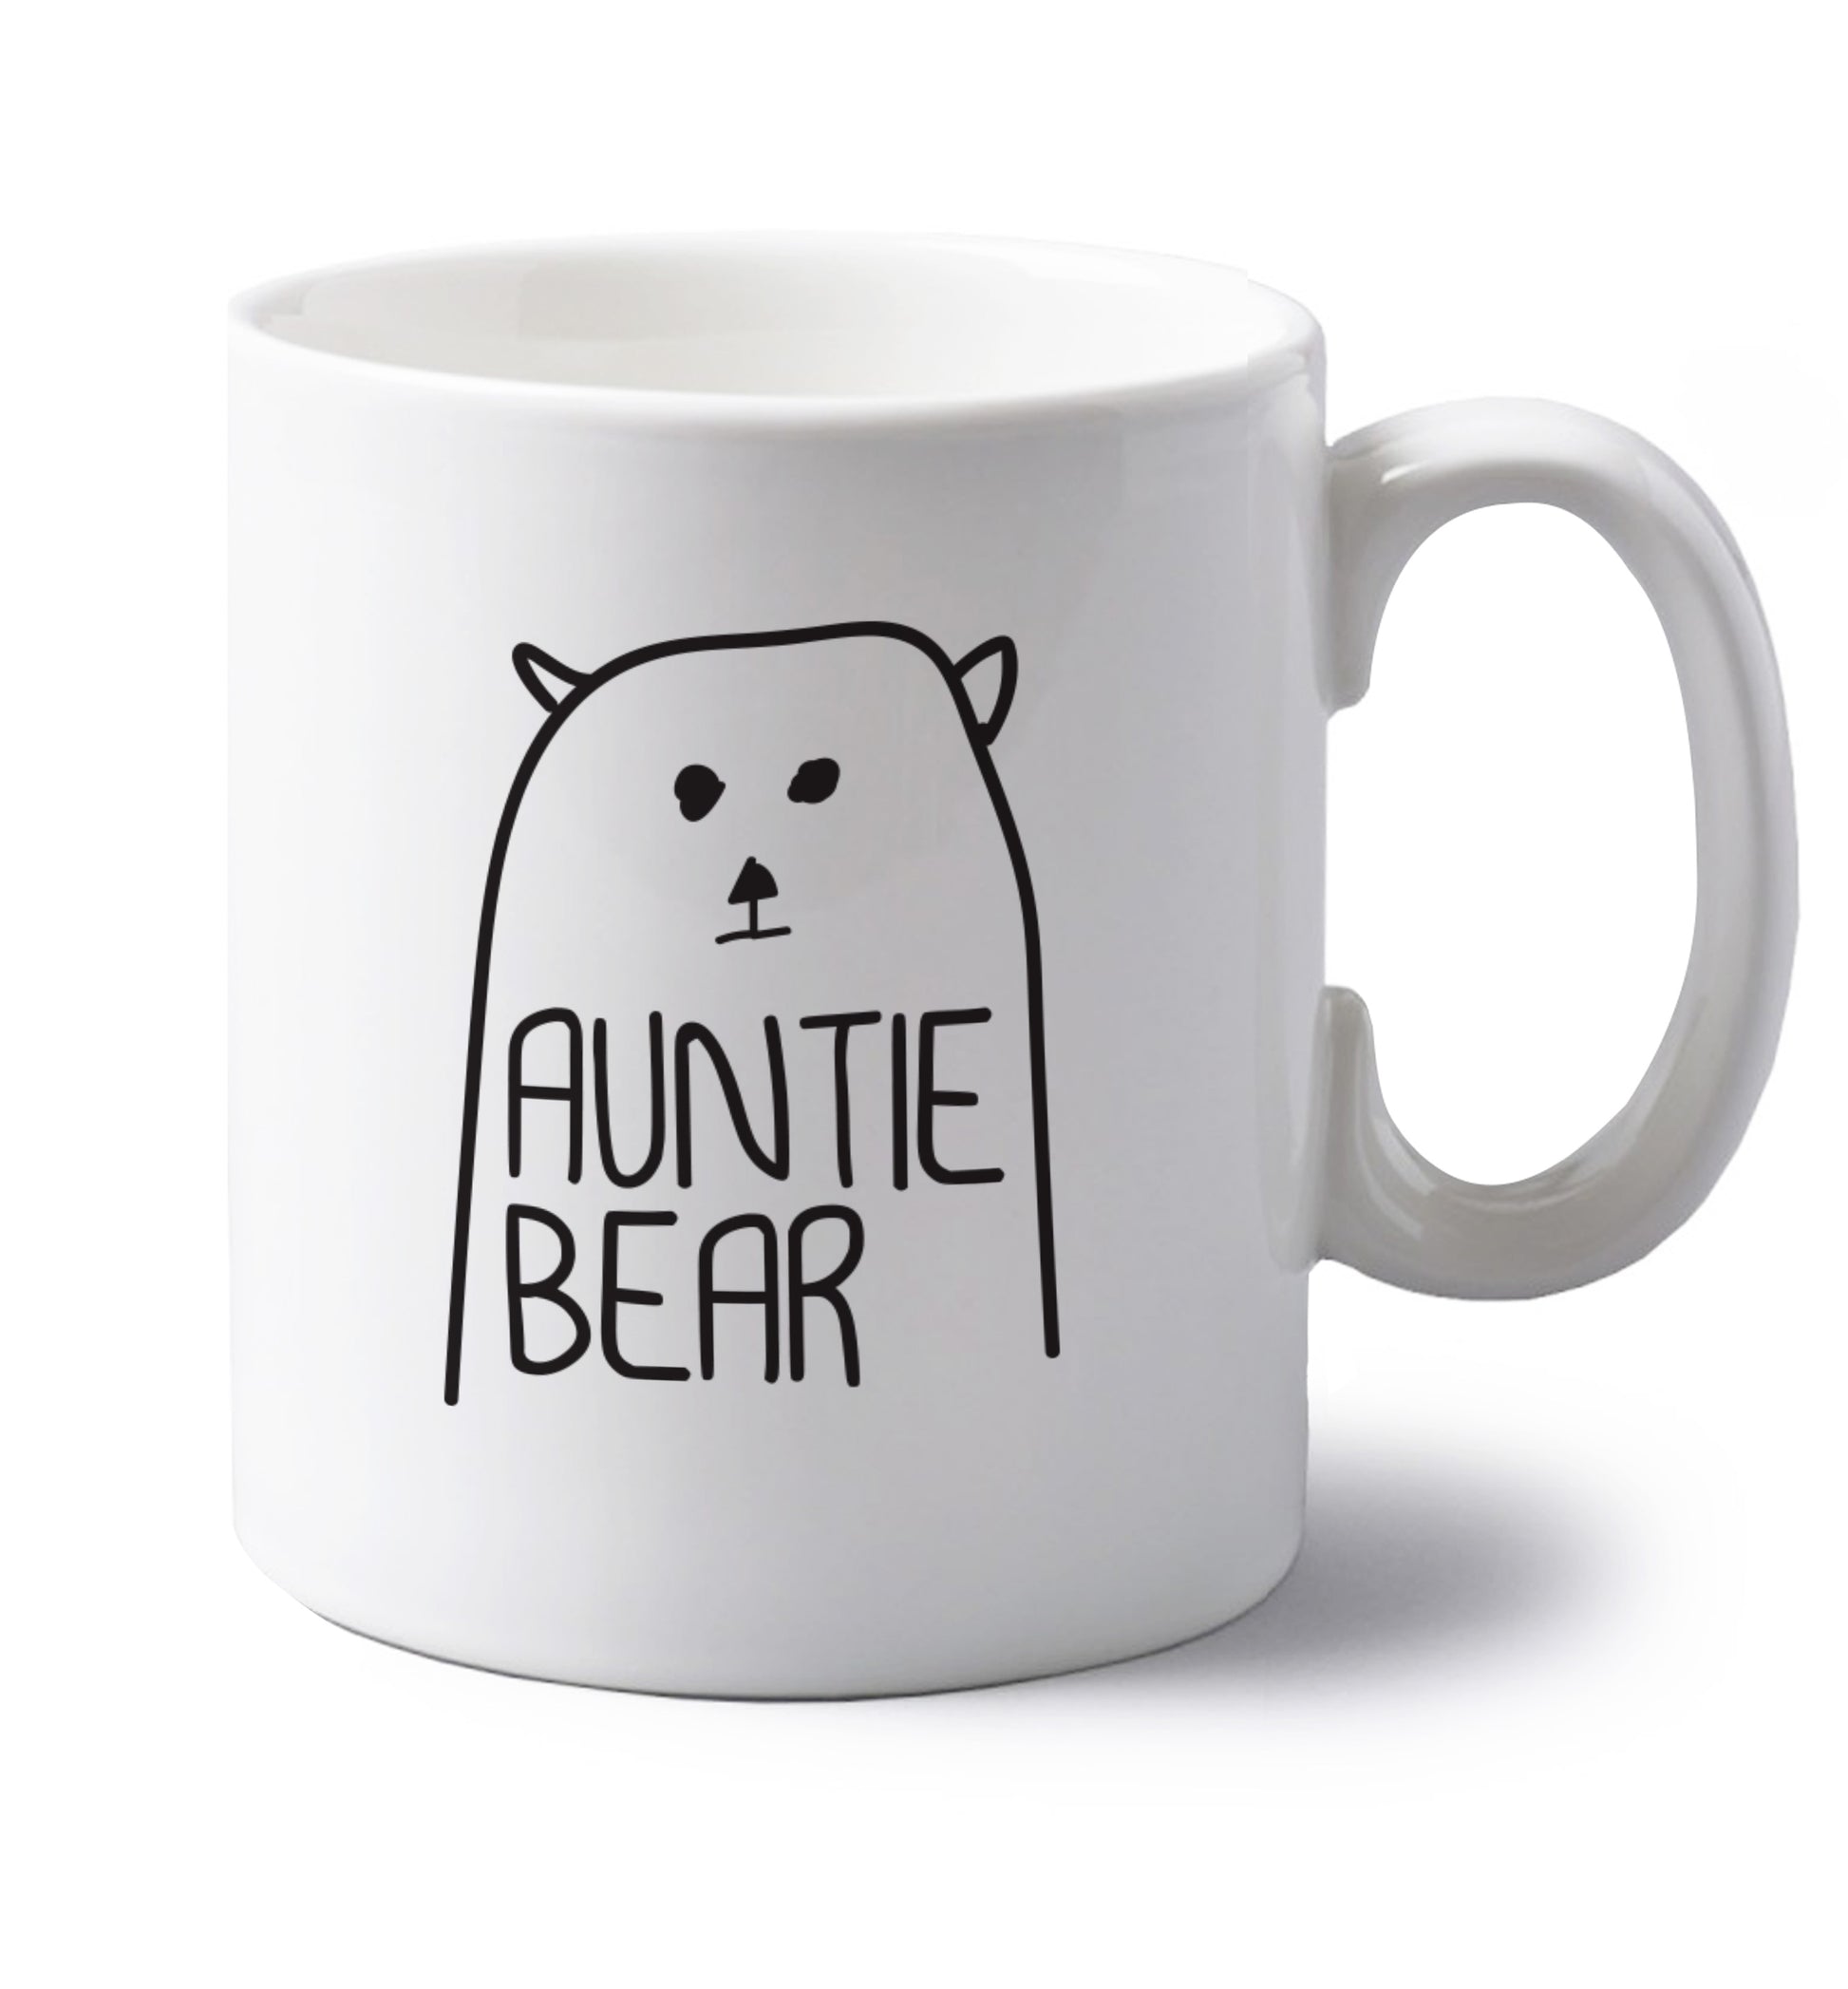 Auntie bear left handed white ceramic mug 